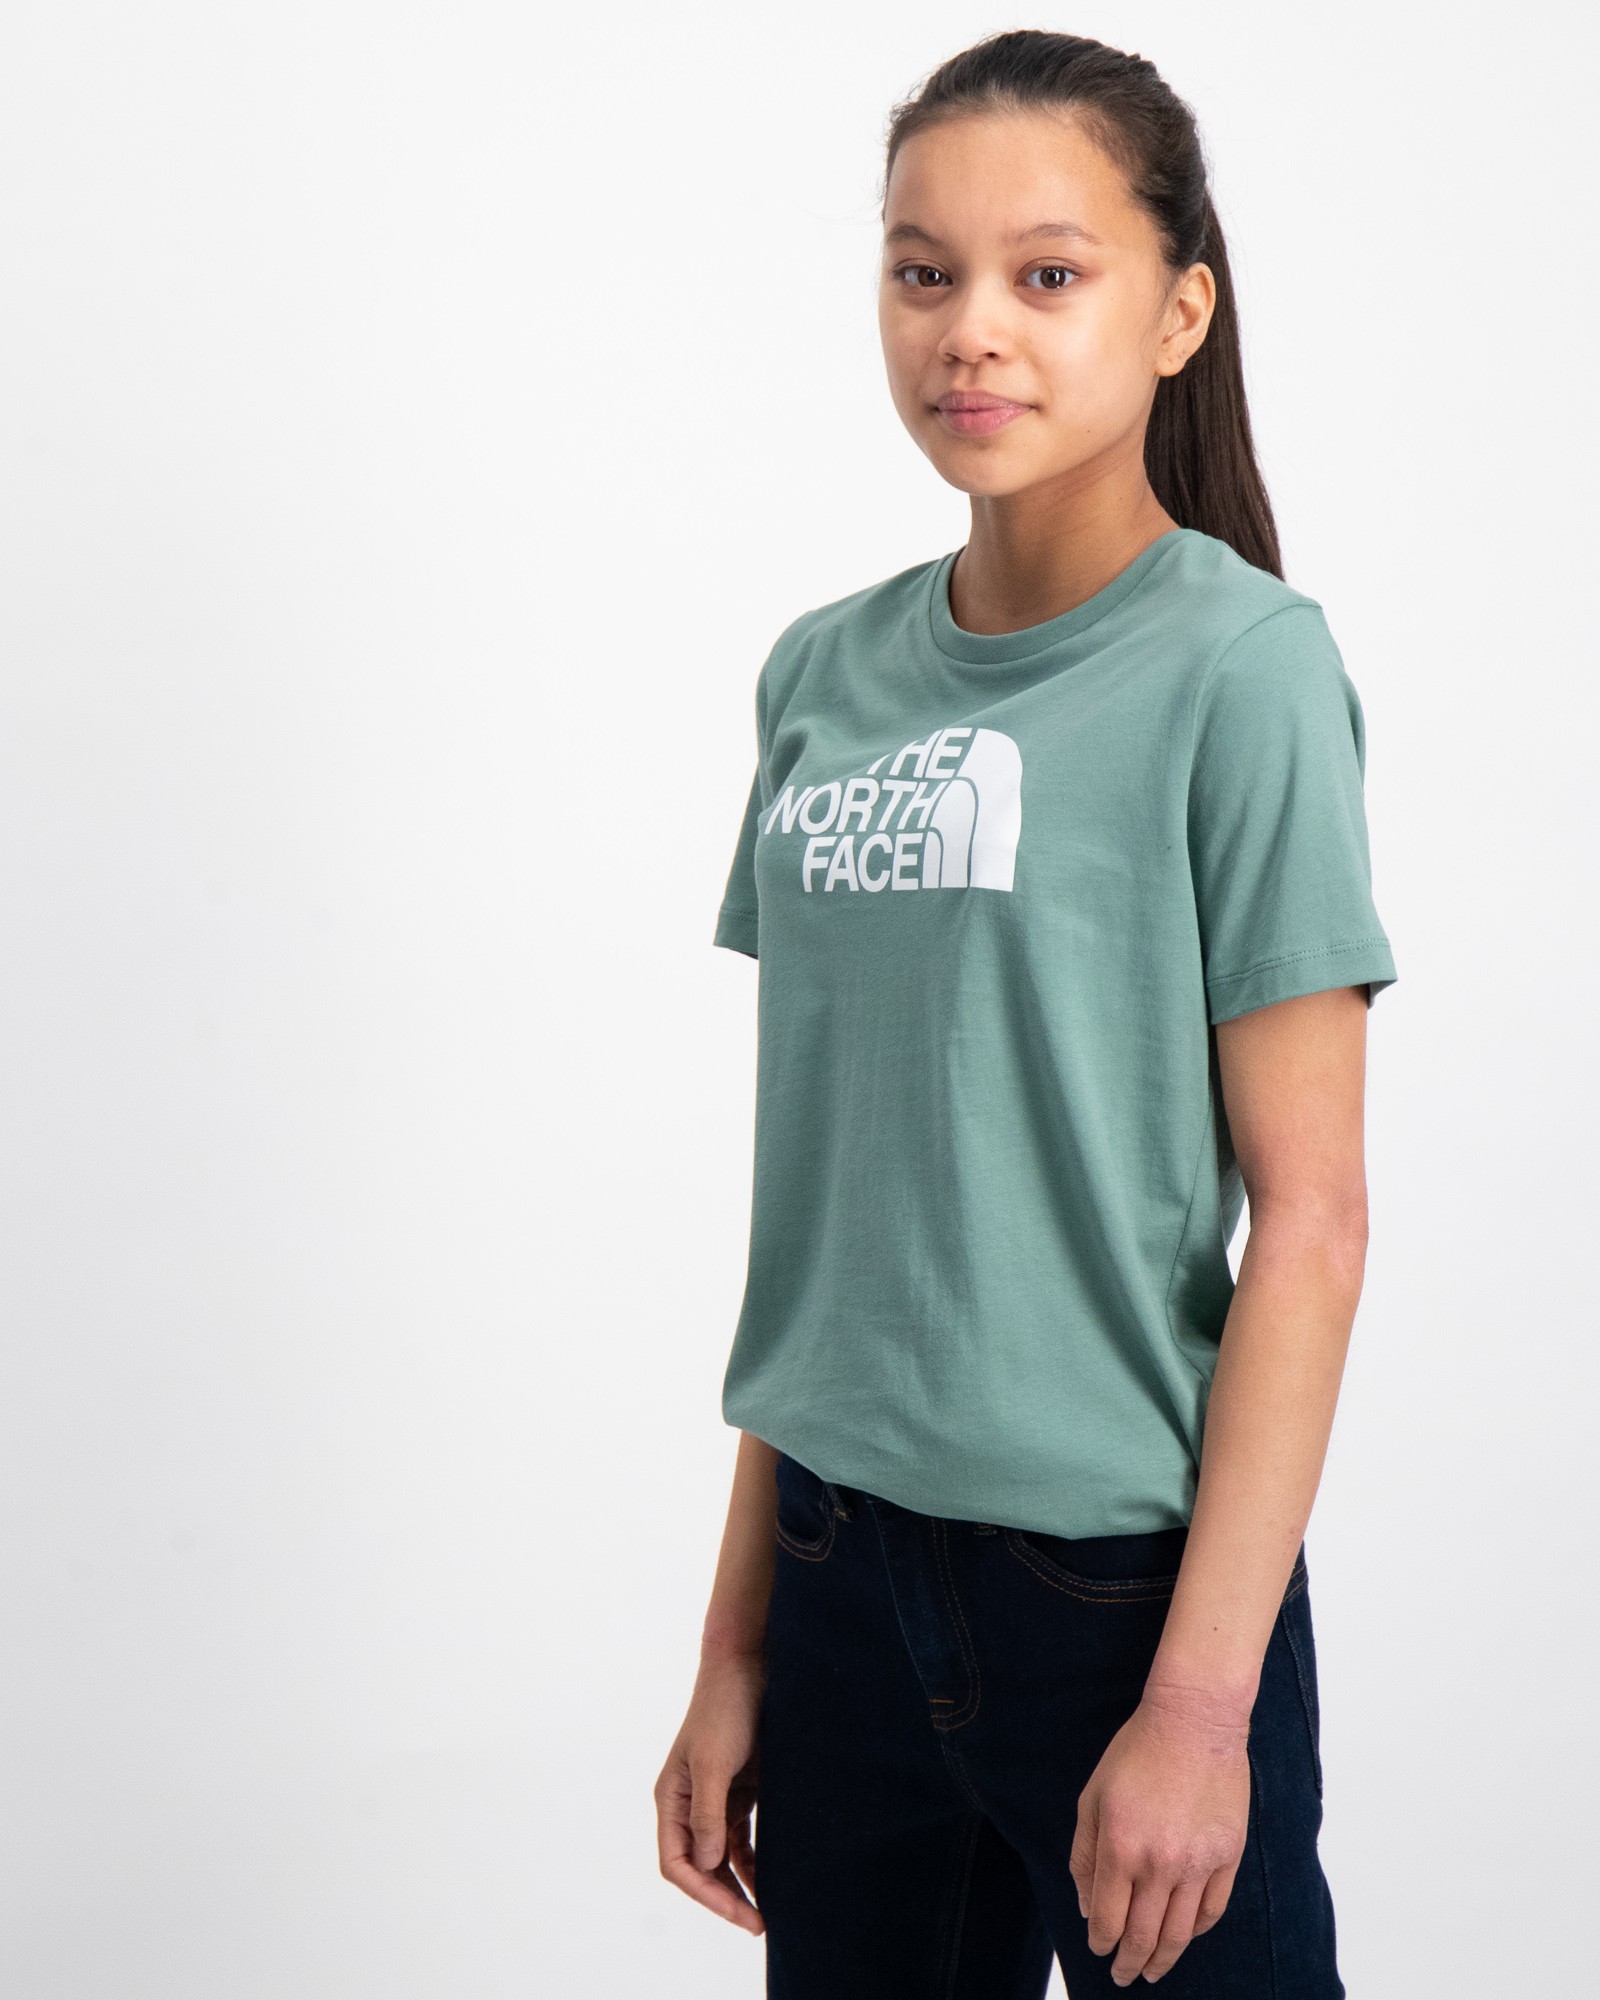 für Face Jugendliche Store The Kinder | T-Shirts North Brand Kids und